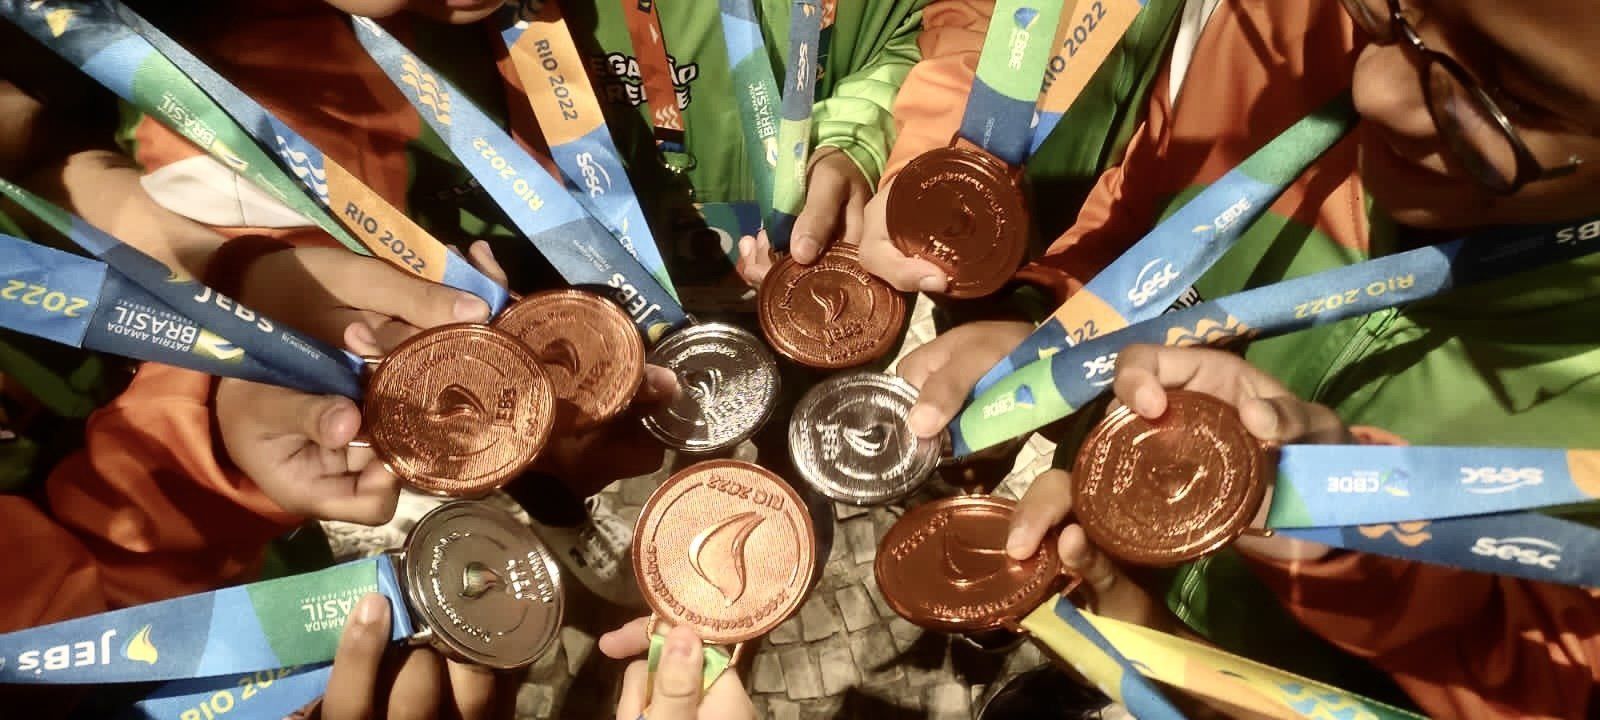 Medalhas cearenses do Judô nos Jogos Escolares Brasileiros (JEB's) 2022. | Foto: (divulgação)